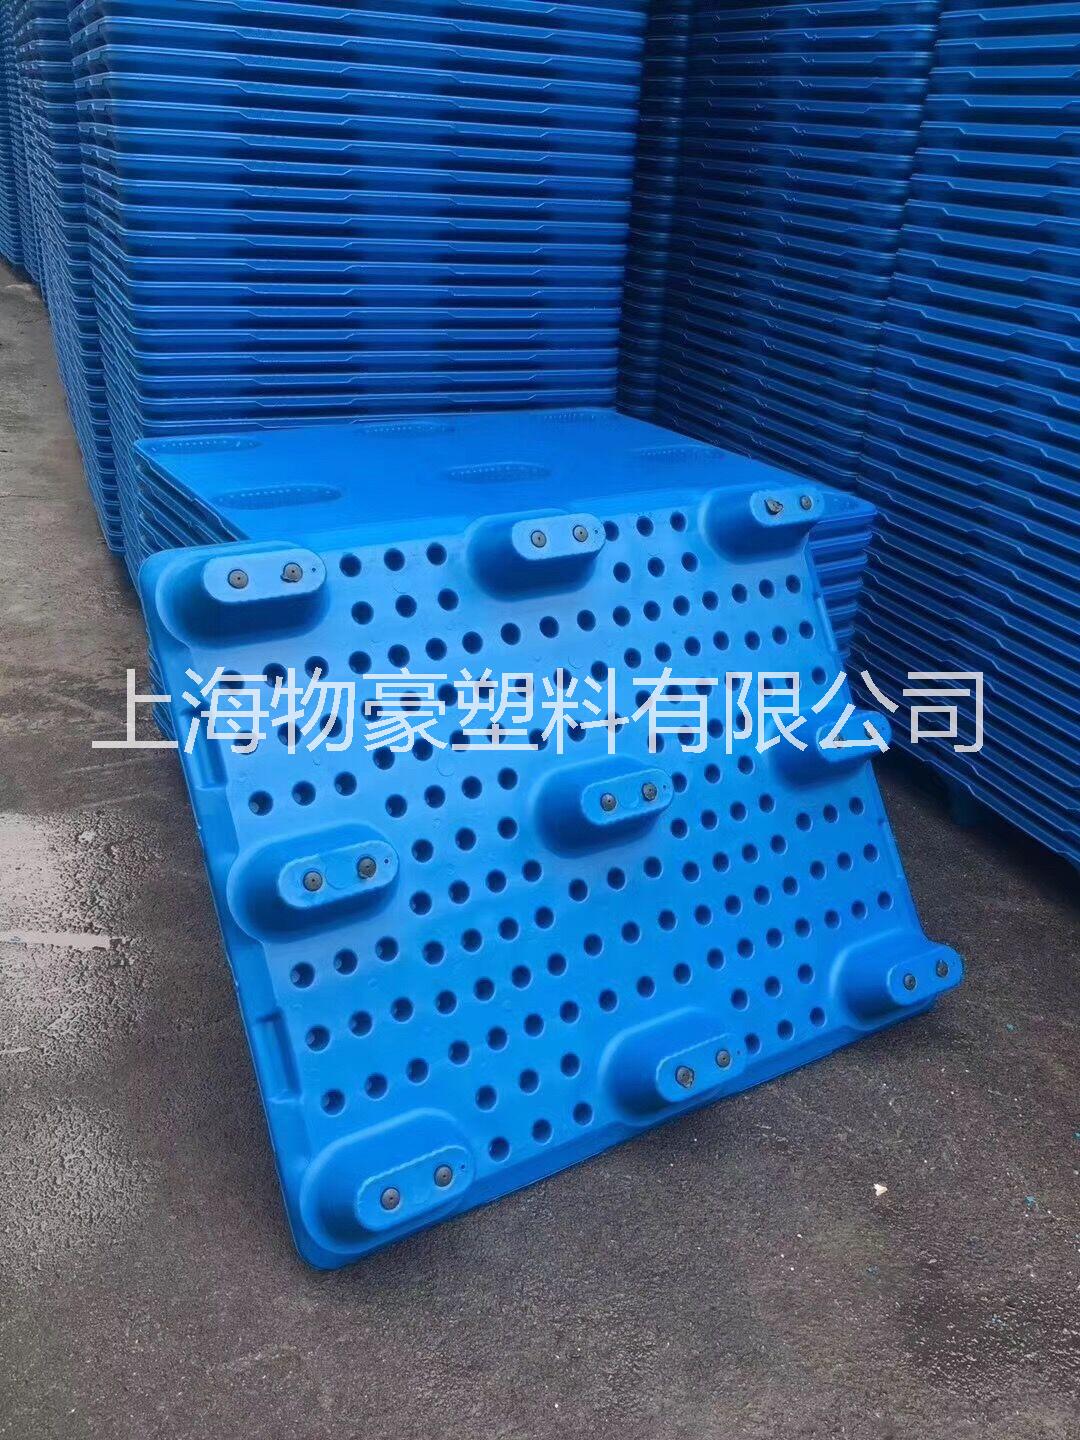 塑料托盘|上海塑料托盘厂报价表|上海塑料托盘批发价格|上海塑料托盘厂家直销  1210塑料吹塑九脚托盘图片